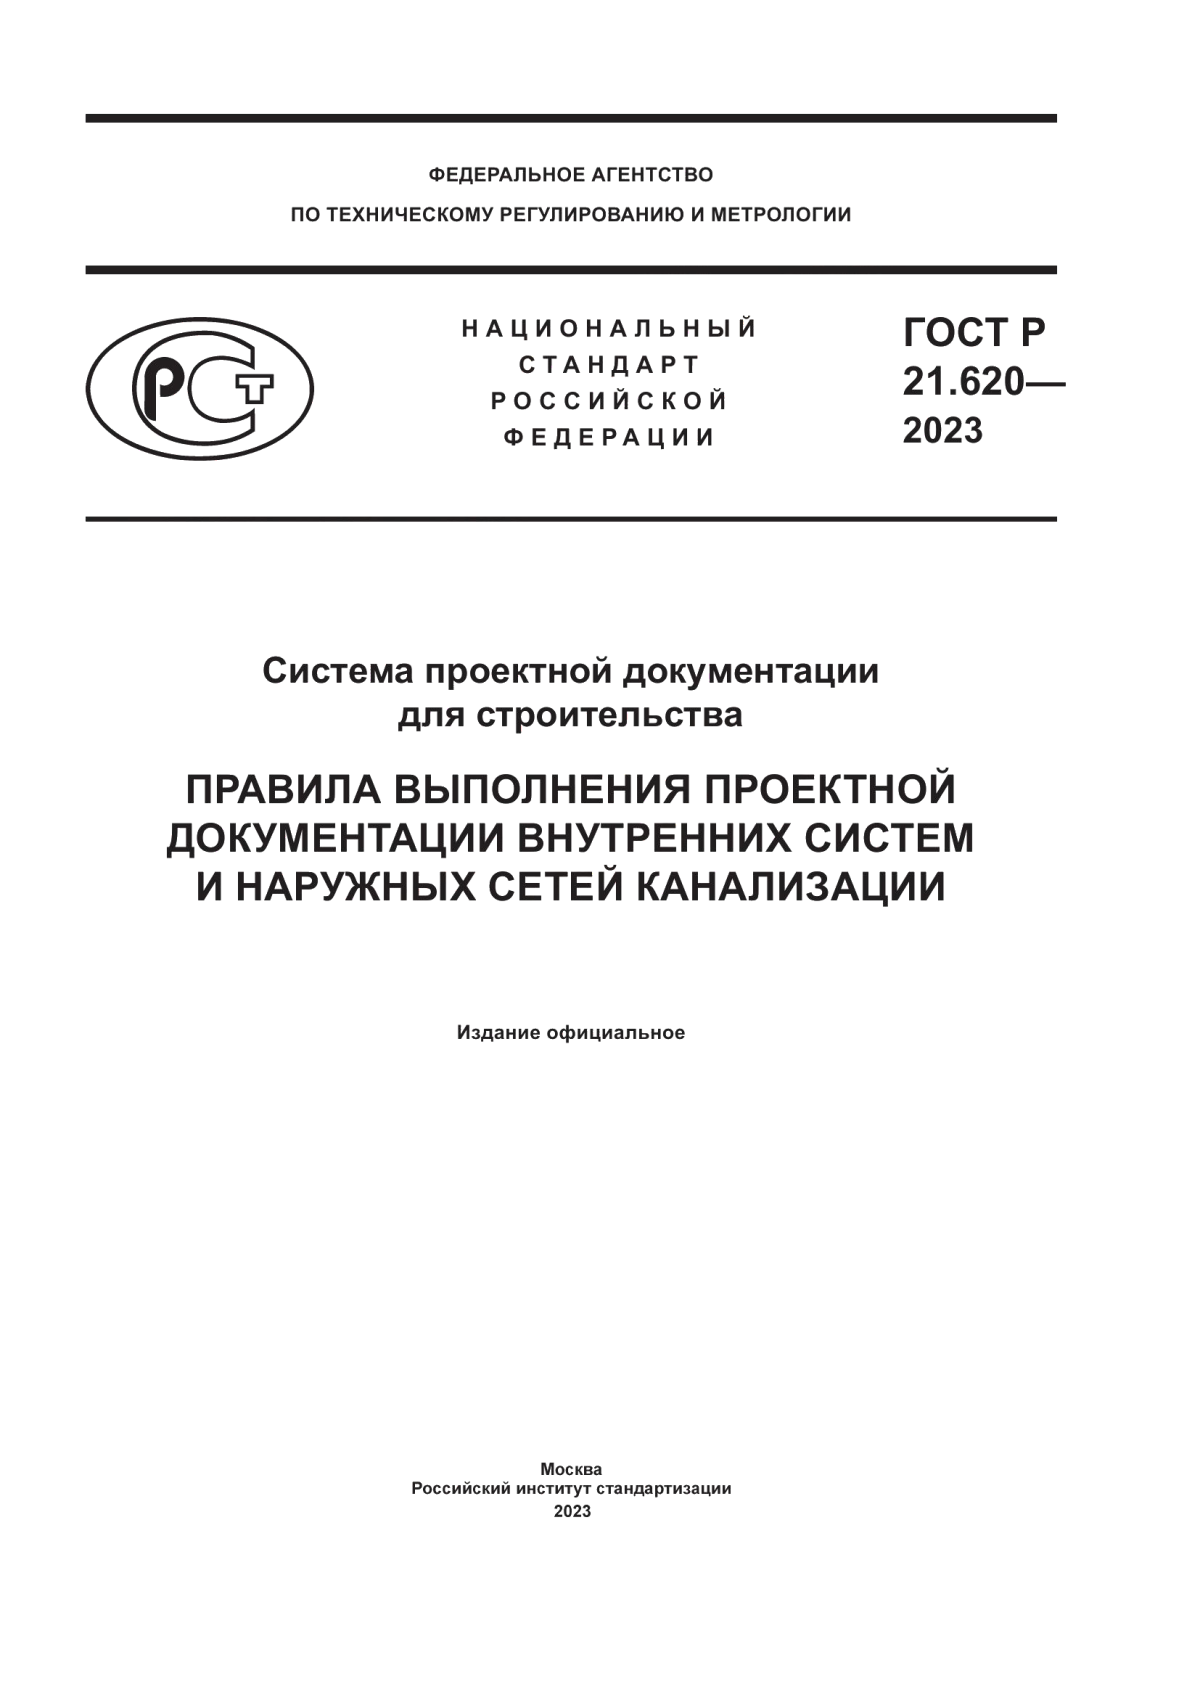 ГОСТ Р 21.620-2023 Система проектной документации для строительства. Правила выполнения проектной документации внутренних систем и наружных сетей канализации